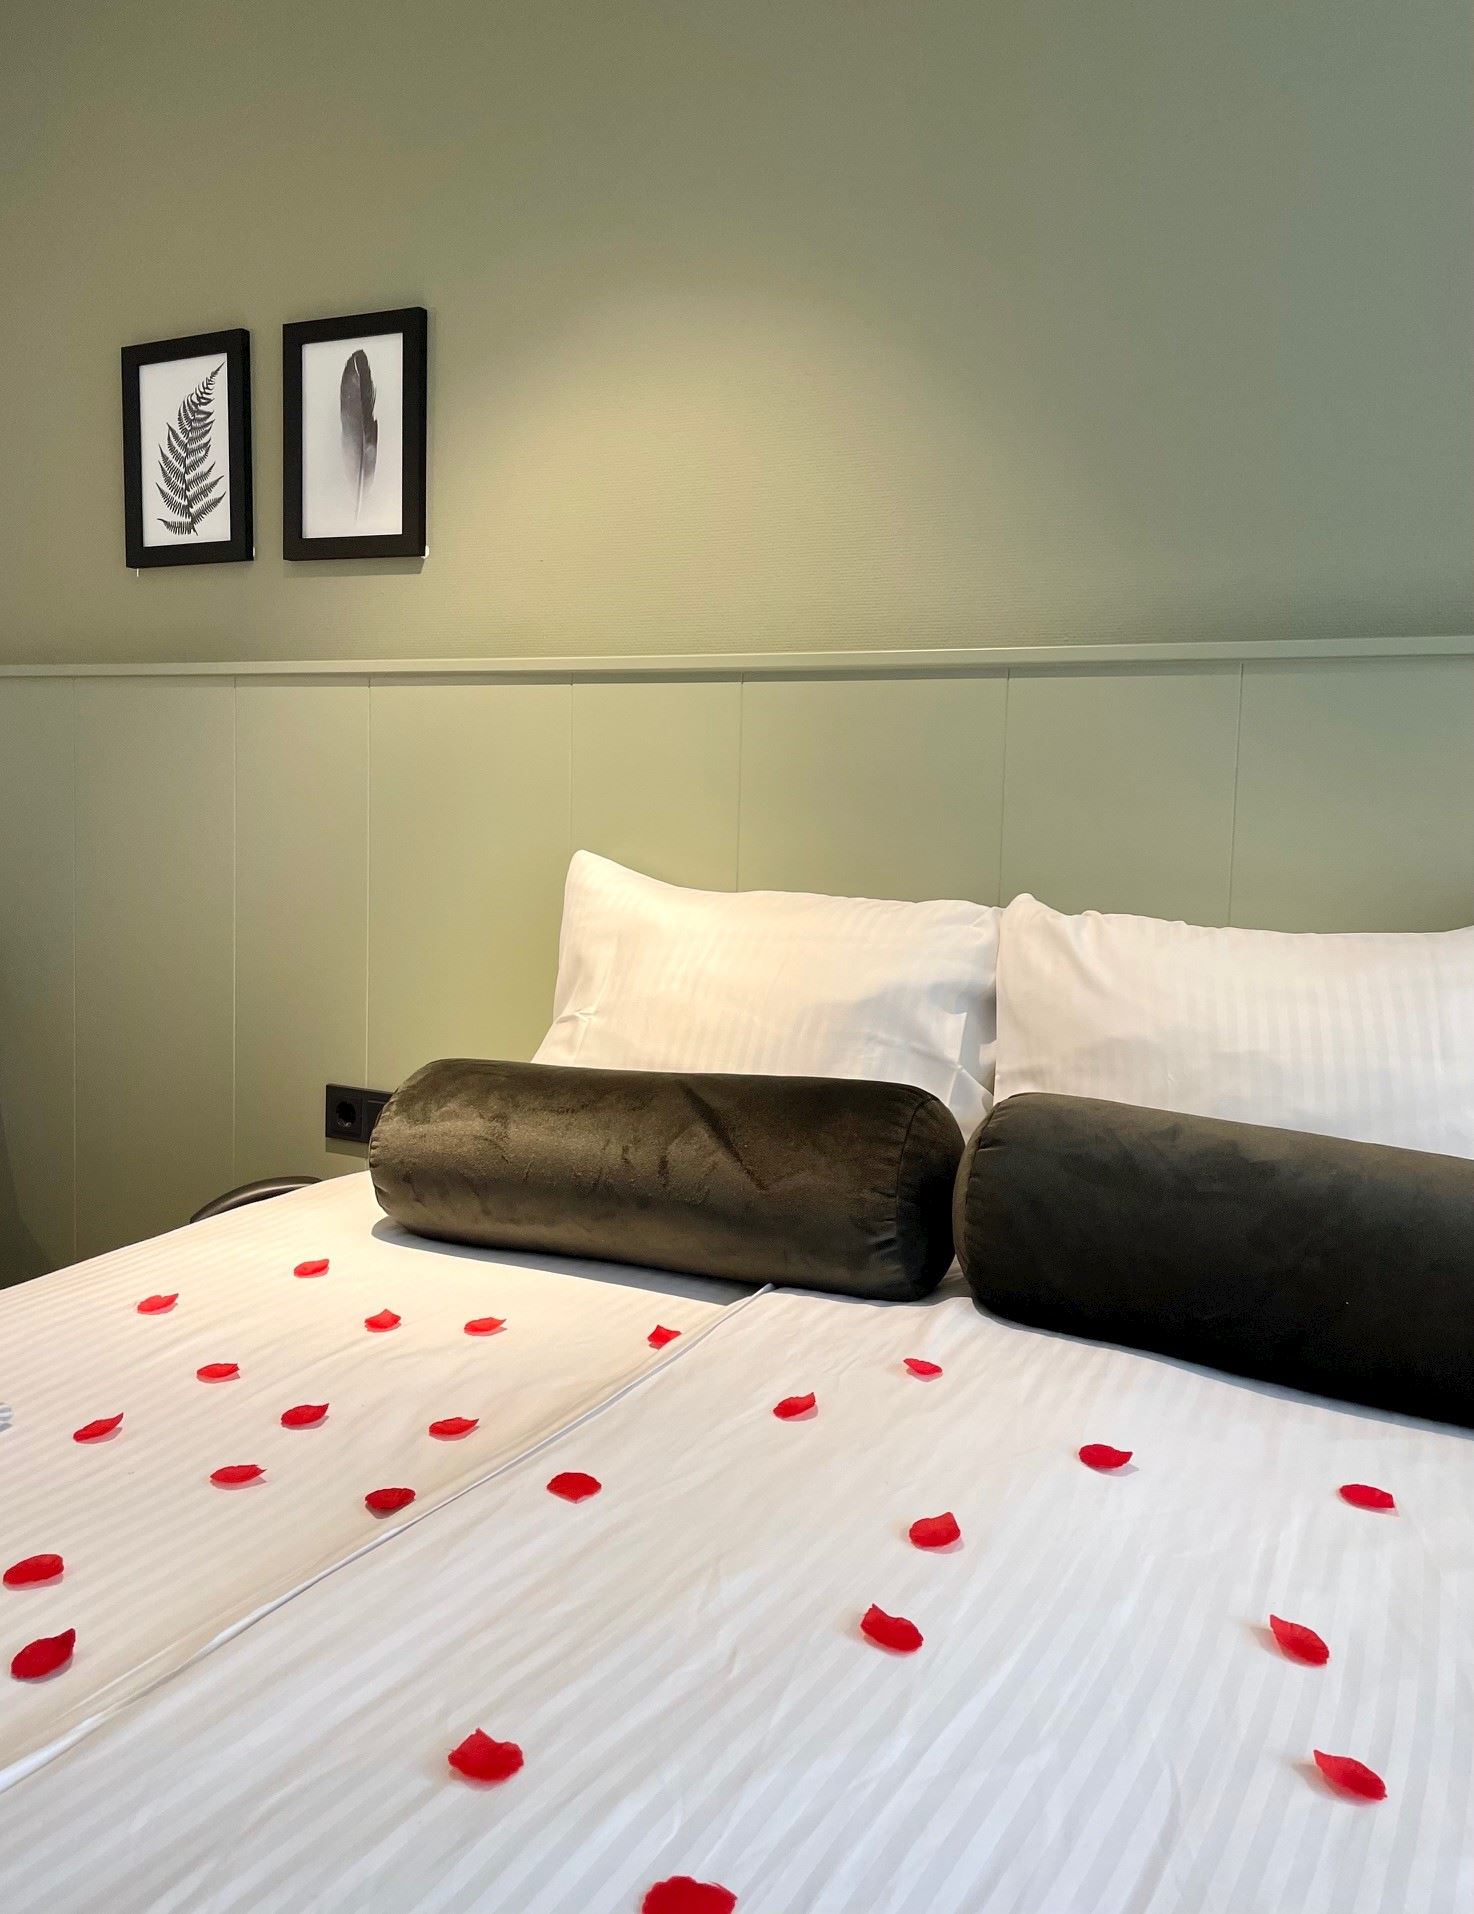 Aanpassing betrouwbaarheid Heerlijk Romantische overnachting Utrecht | Fine Hotels Bergse Bossen